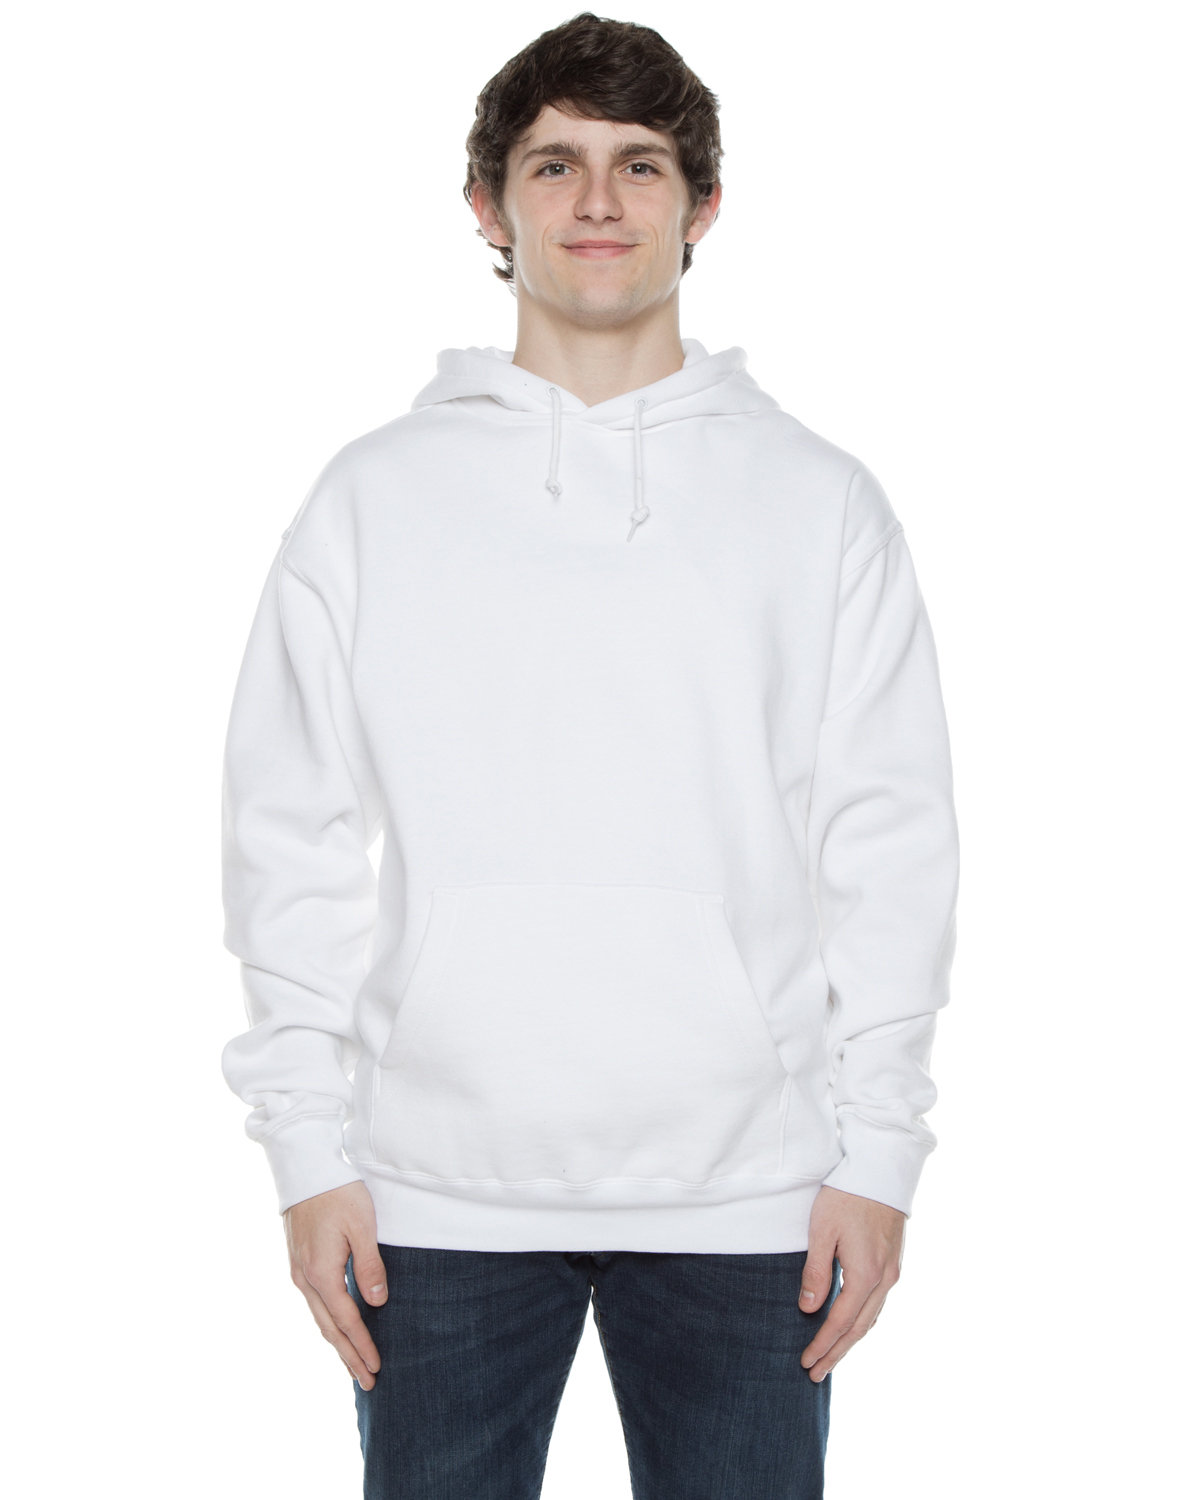 Unisex Exclusive Hooded Sweatshirt-